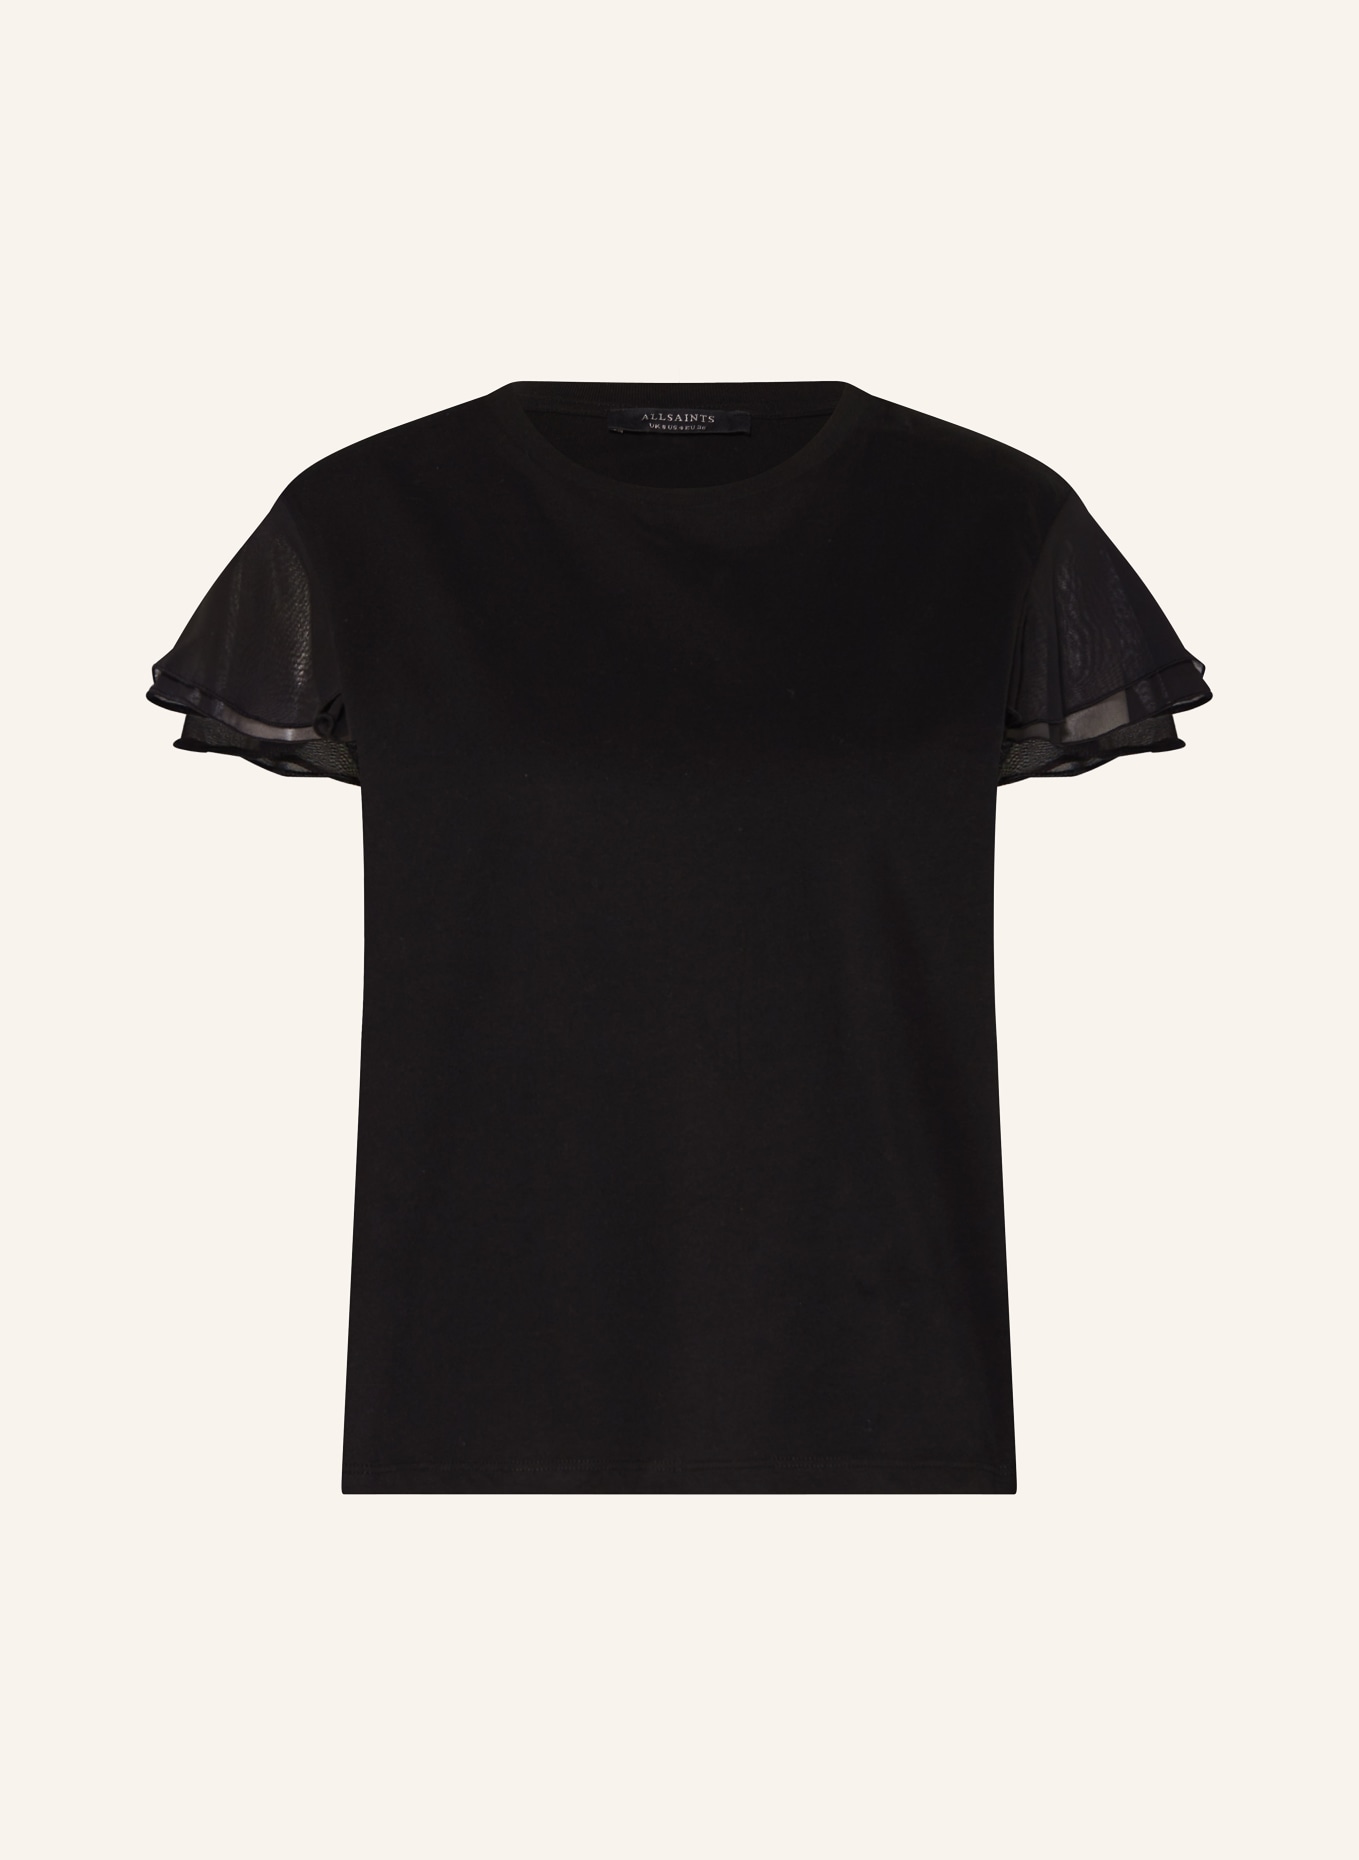 ALLSAINTS T-Shirt ISABEL mit Volants, Farbe: SCHWARZ (Bild 1)